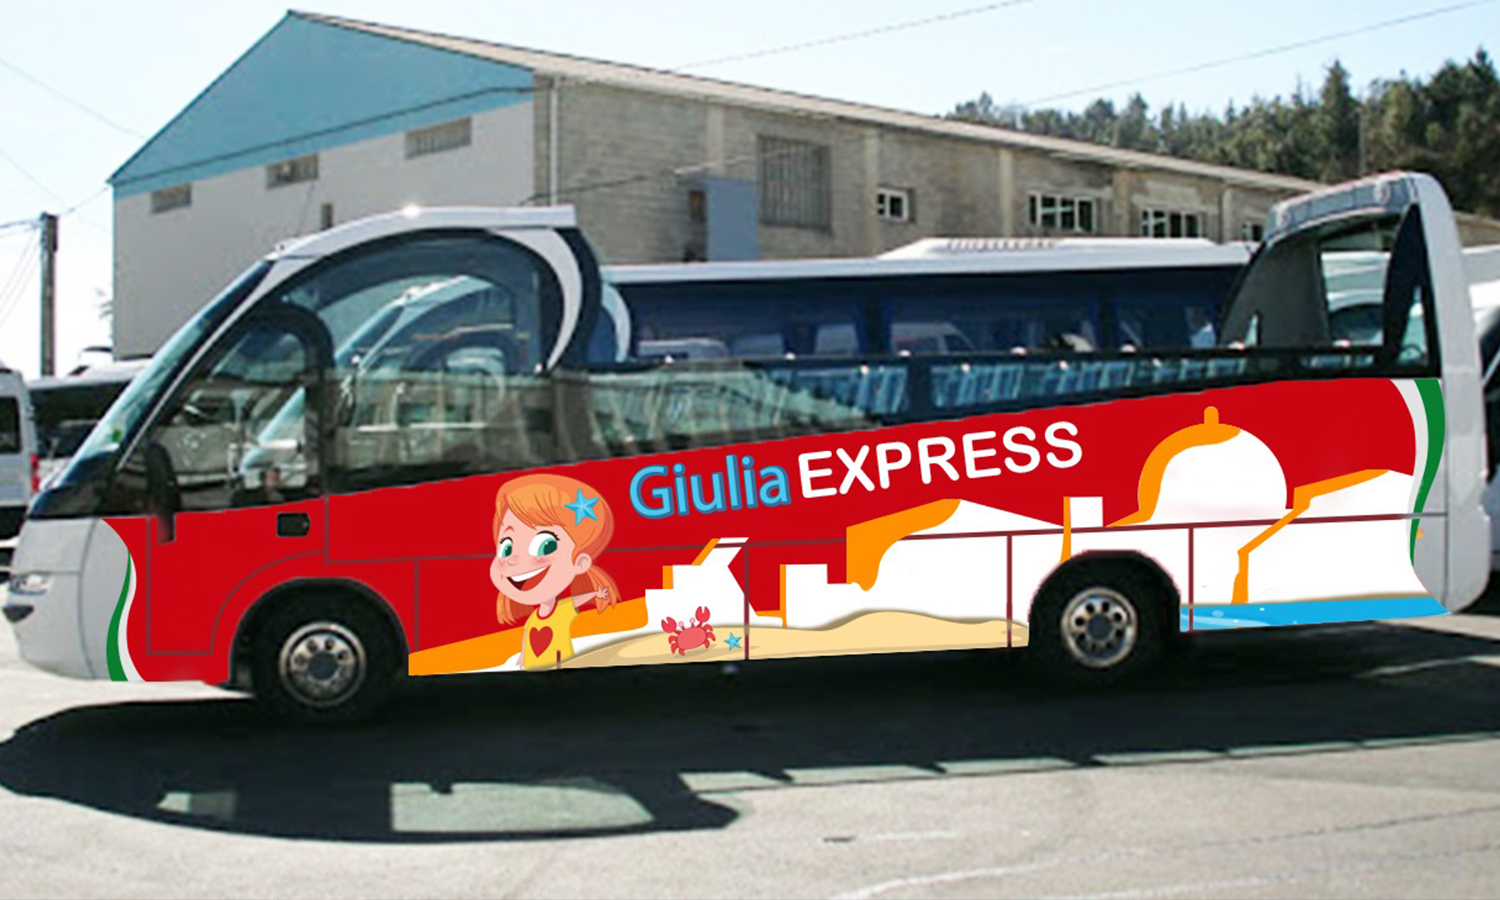 Giulia Express